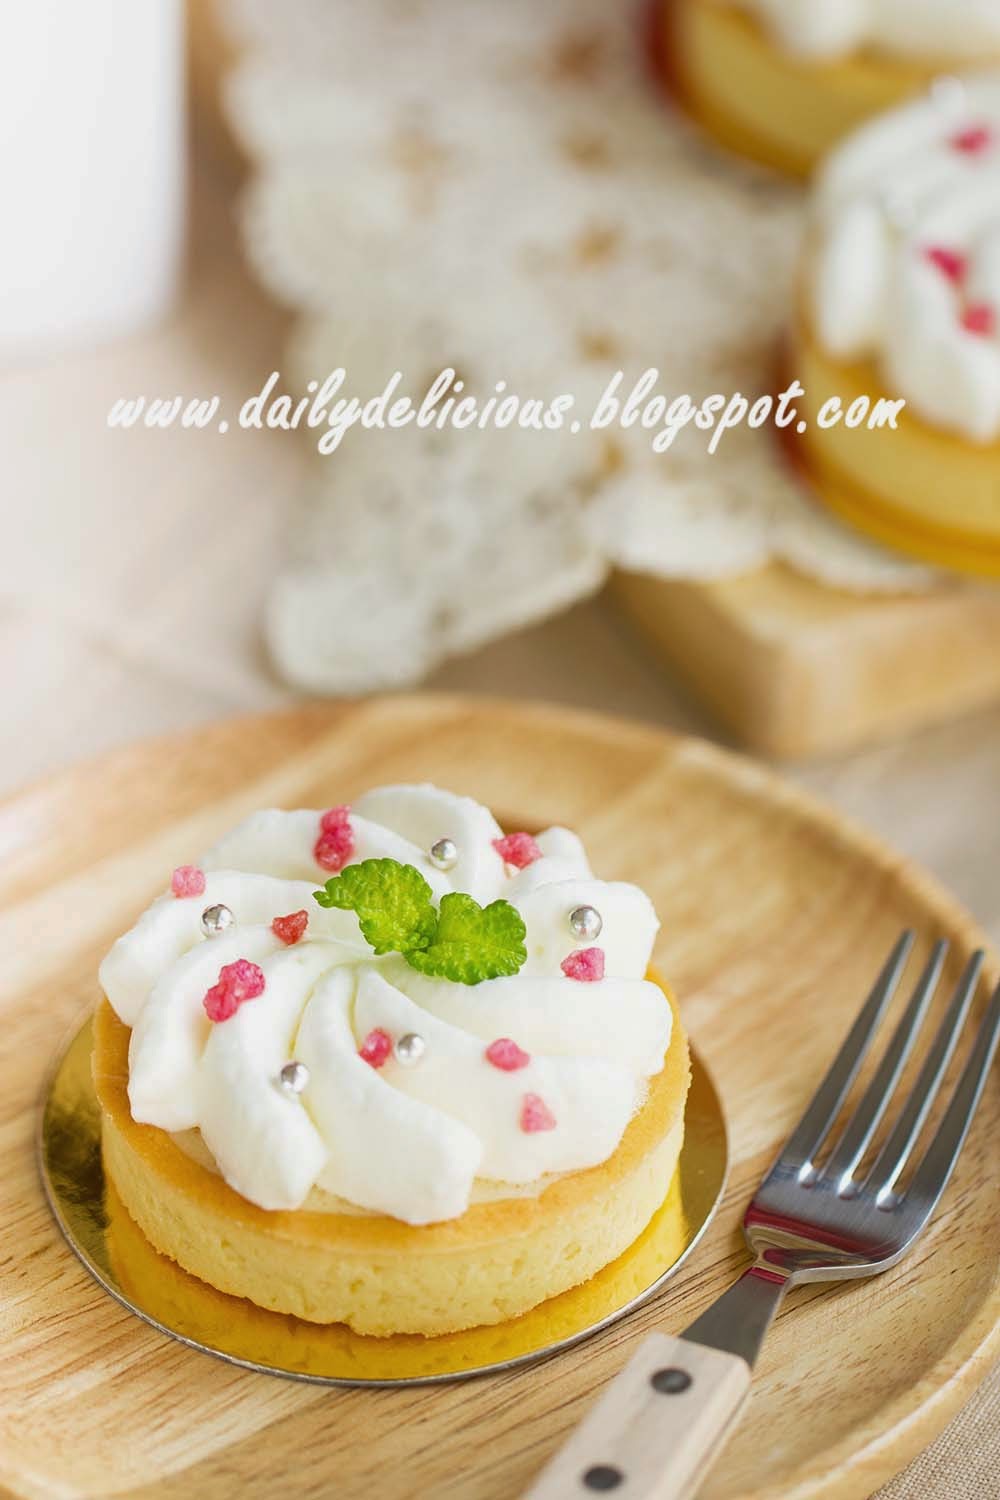 dailydelicious thai: Lychee Tart: My Sweet little tart